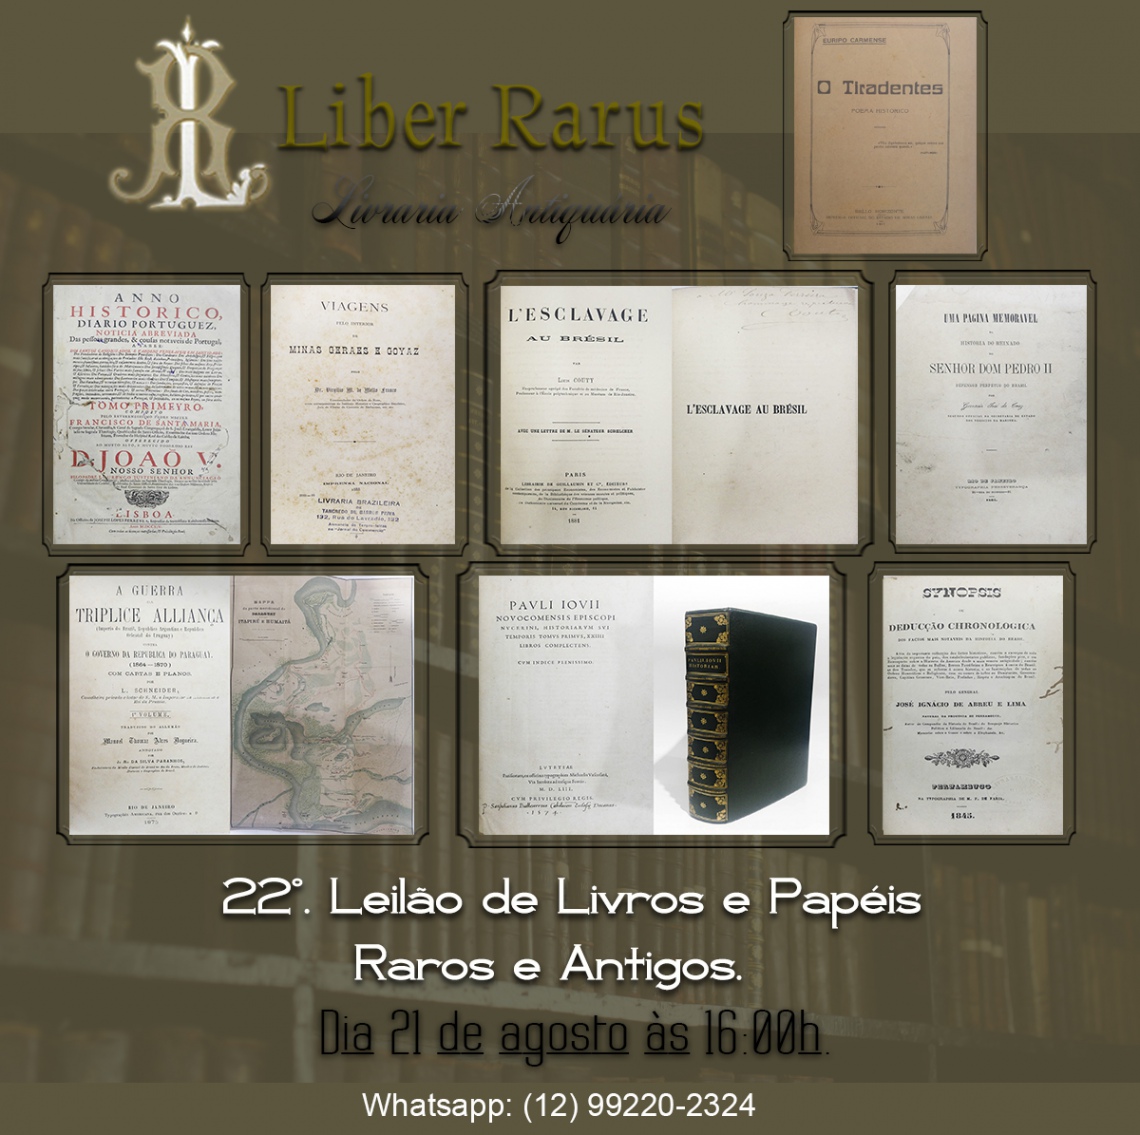 22º Leilão de Livros e Papéis Raros e Antigos - Liber Rarus - 21/08/2021 - 16h00